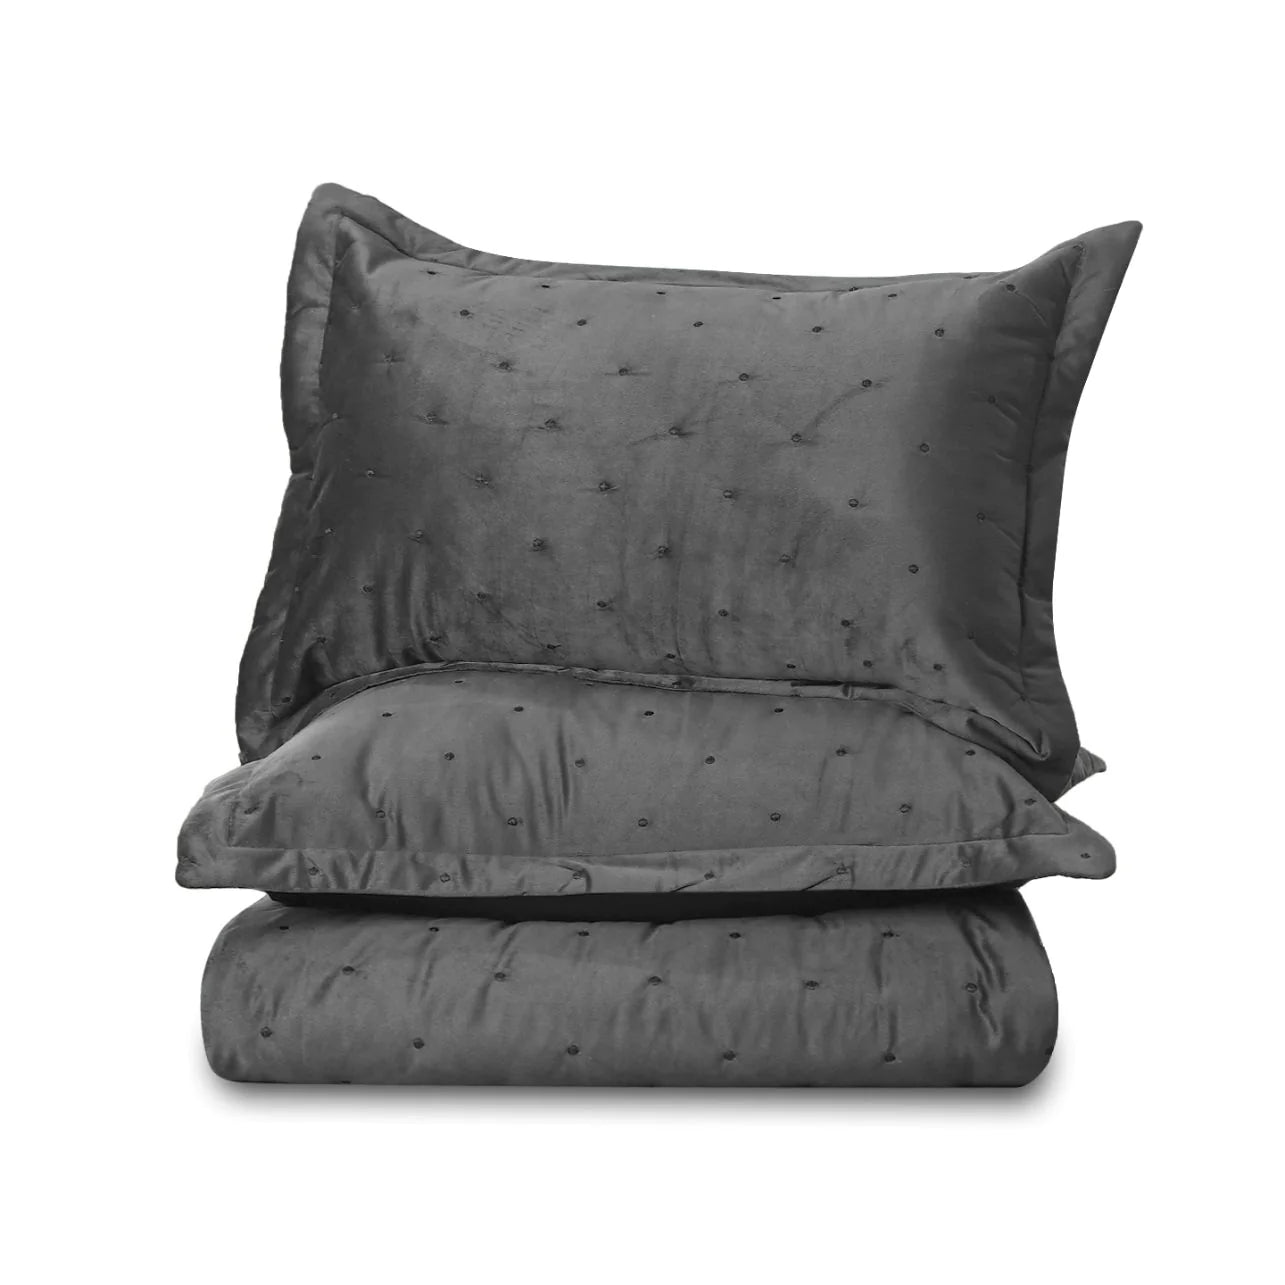 Bedspread Grey set - Ultrasoft Velvet Embroidered Quilted